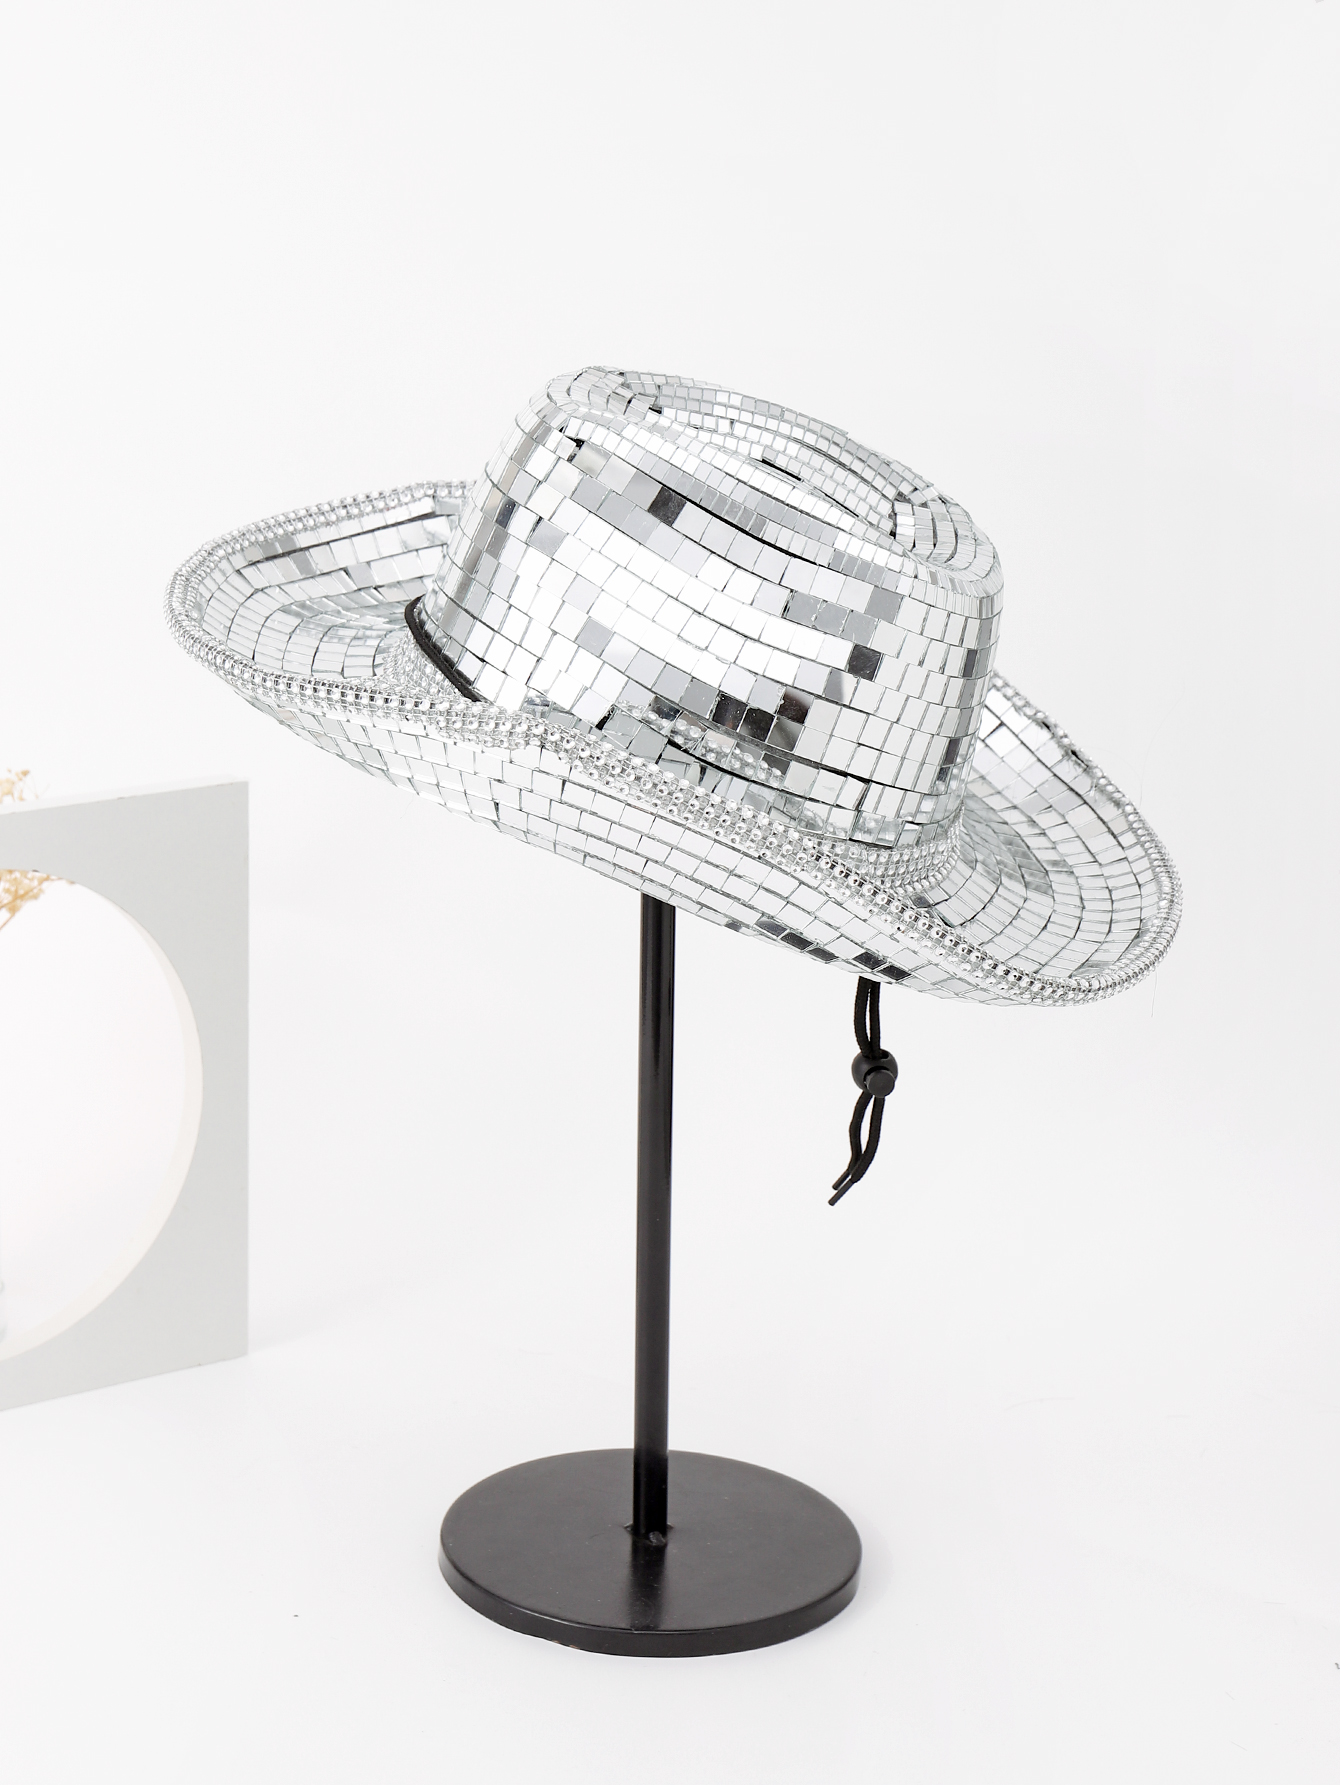 1 шт. мужская новая зеркальная шляпа в стиле диско с кепкой для лазерной рыбалки, серебро новая кепка для гольфа модная уличная рабочая шляпа солнцезащитная шляпа для пар мужская и женская шляпа с одинаковой раковиной